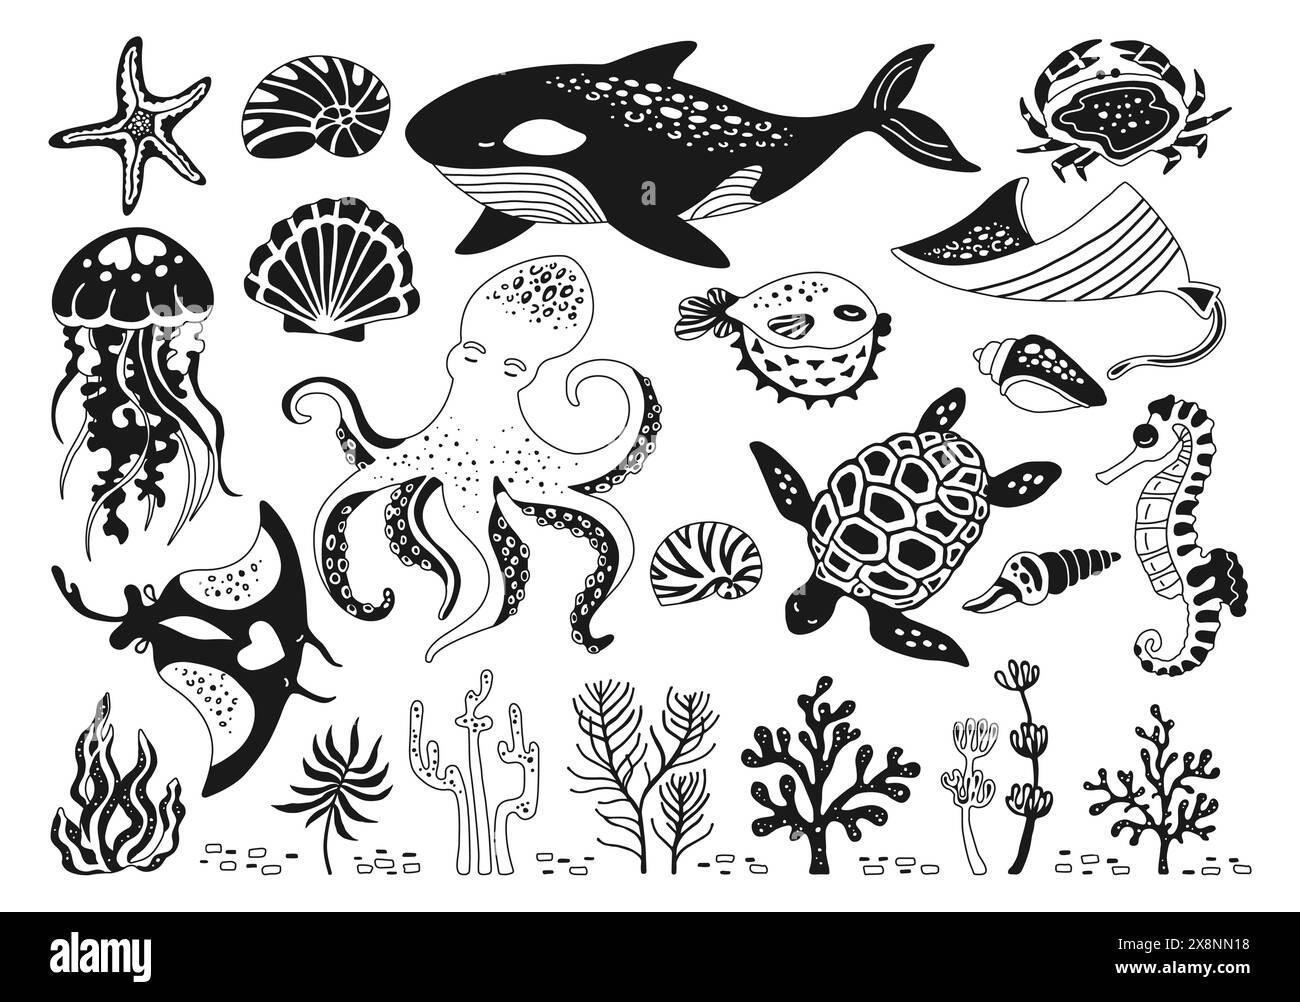 Meerestiere kritzelnd Umrissset. Marine-Comic-Zeichentrick-Glyphe-Design für Kinder Quallen, Muscheln und Seepferdchen, Fische. Seesterne, Schildkröten und Kraken, Krabben, Wale, medusa-Vektor Stock Vektor